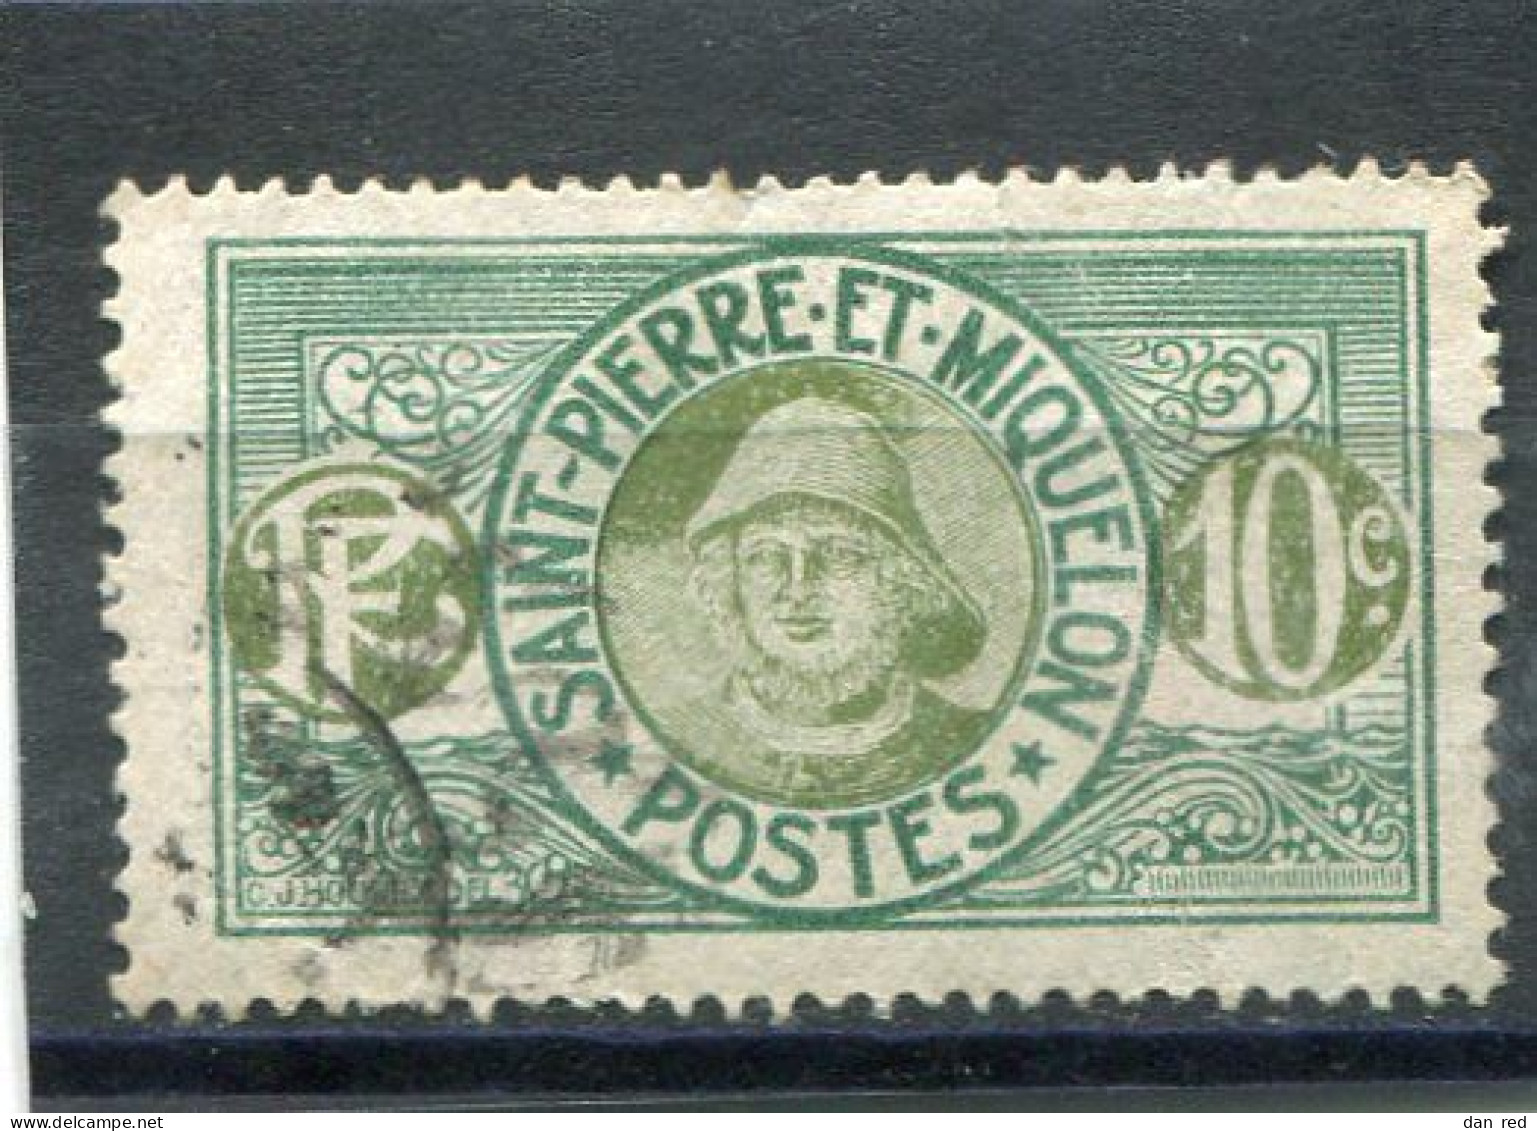 SAINT-PIERRE ET MIQUELON N° 108 (Y&T) (Oblitéré) - Used Stamps